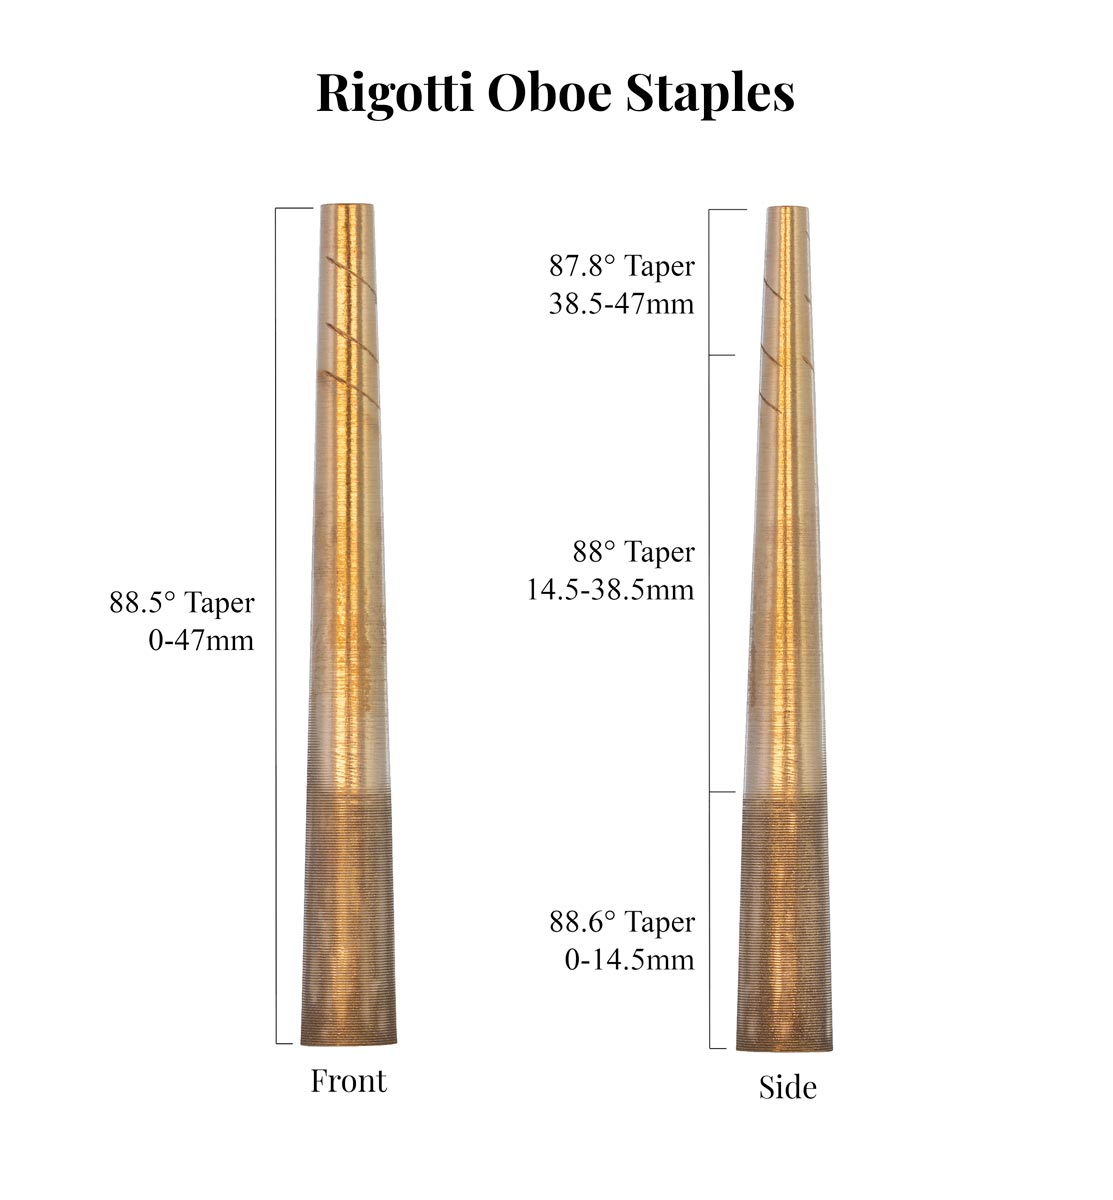 Rigotti Oboe Staples Taper Comparison